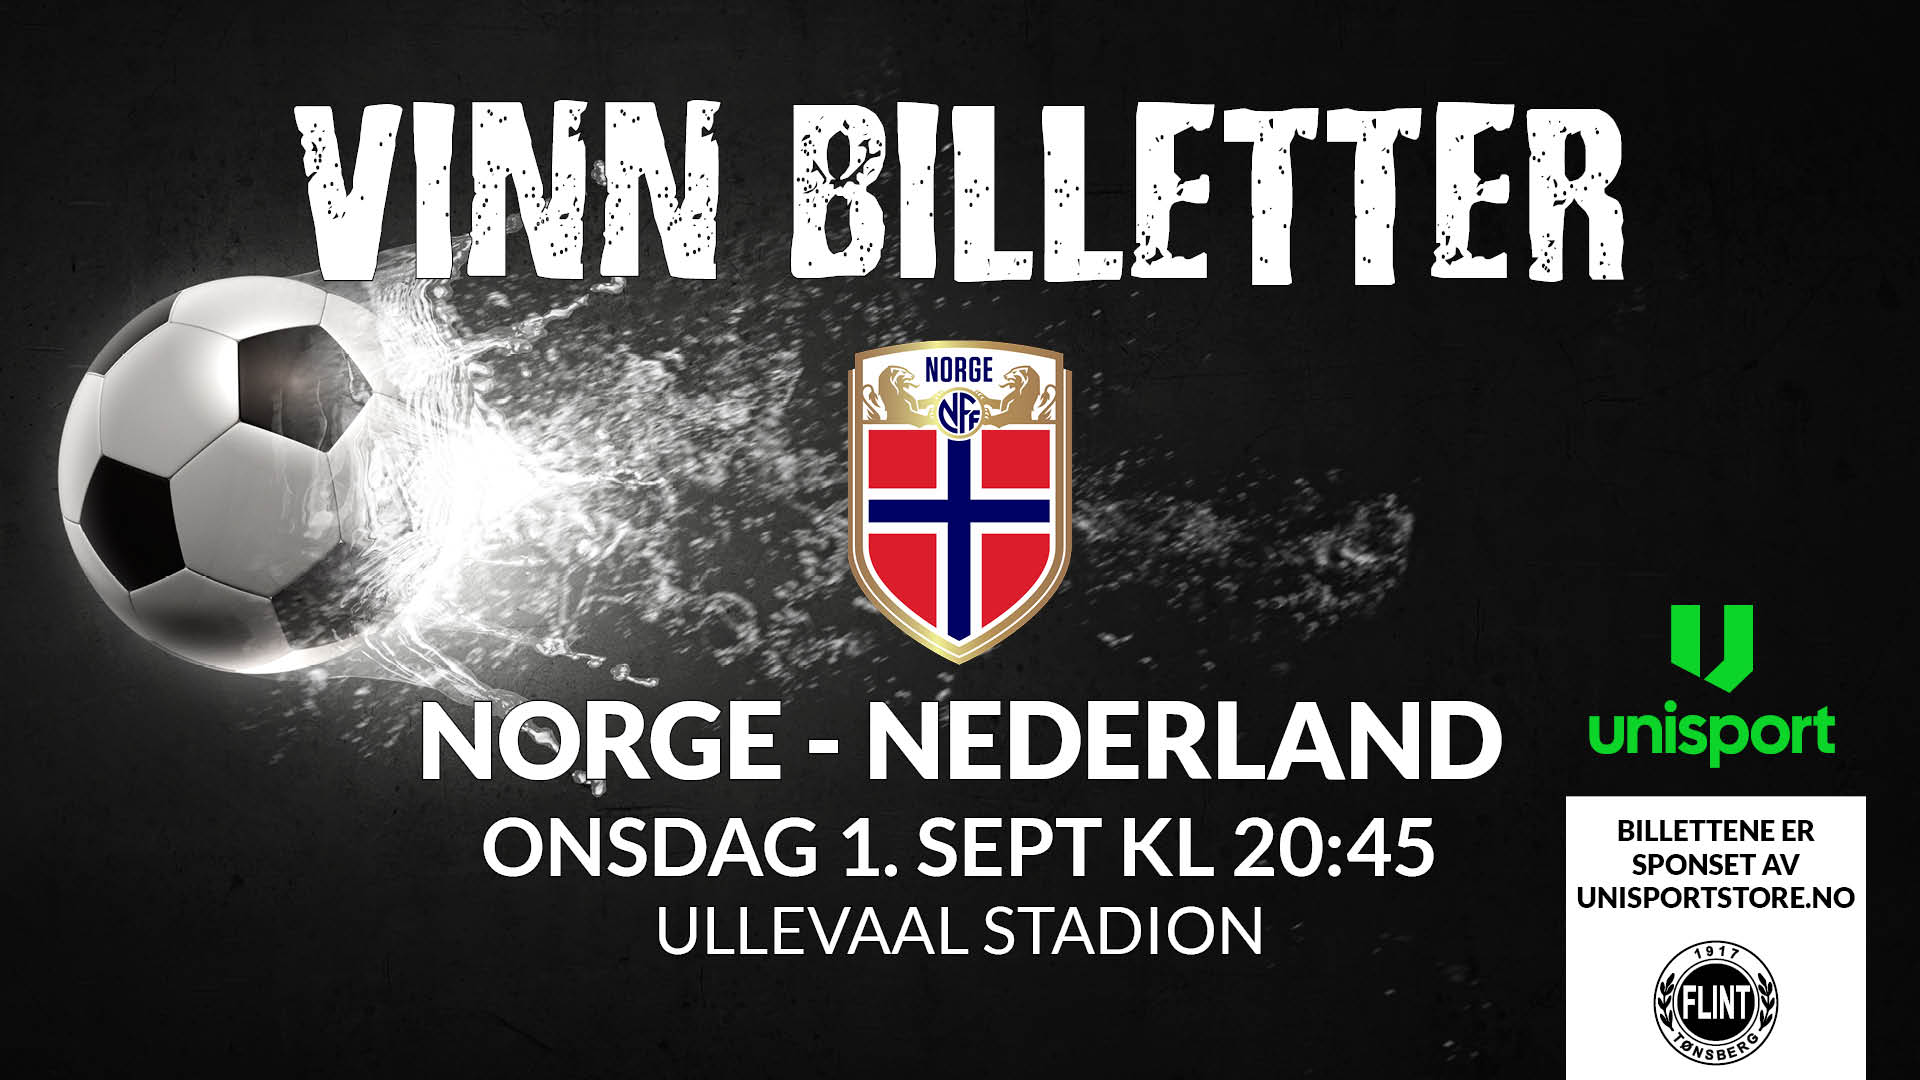 https://www.flintfotball.no/wp-content/uploads/2021/08/Vinn-billetter-til-landskamp-Norge-Nederland-1.sept-2021-header-nettside.jpg